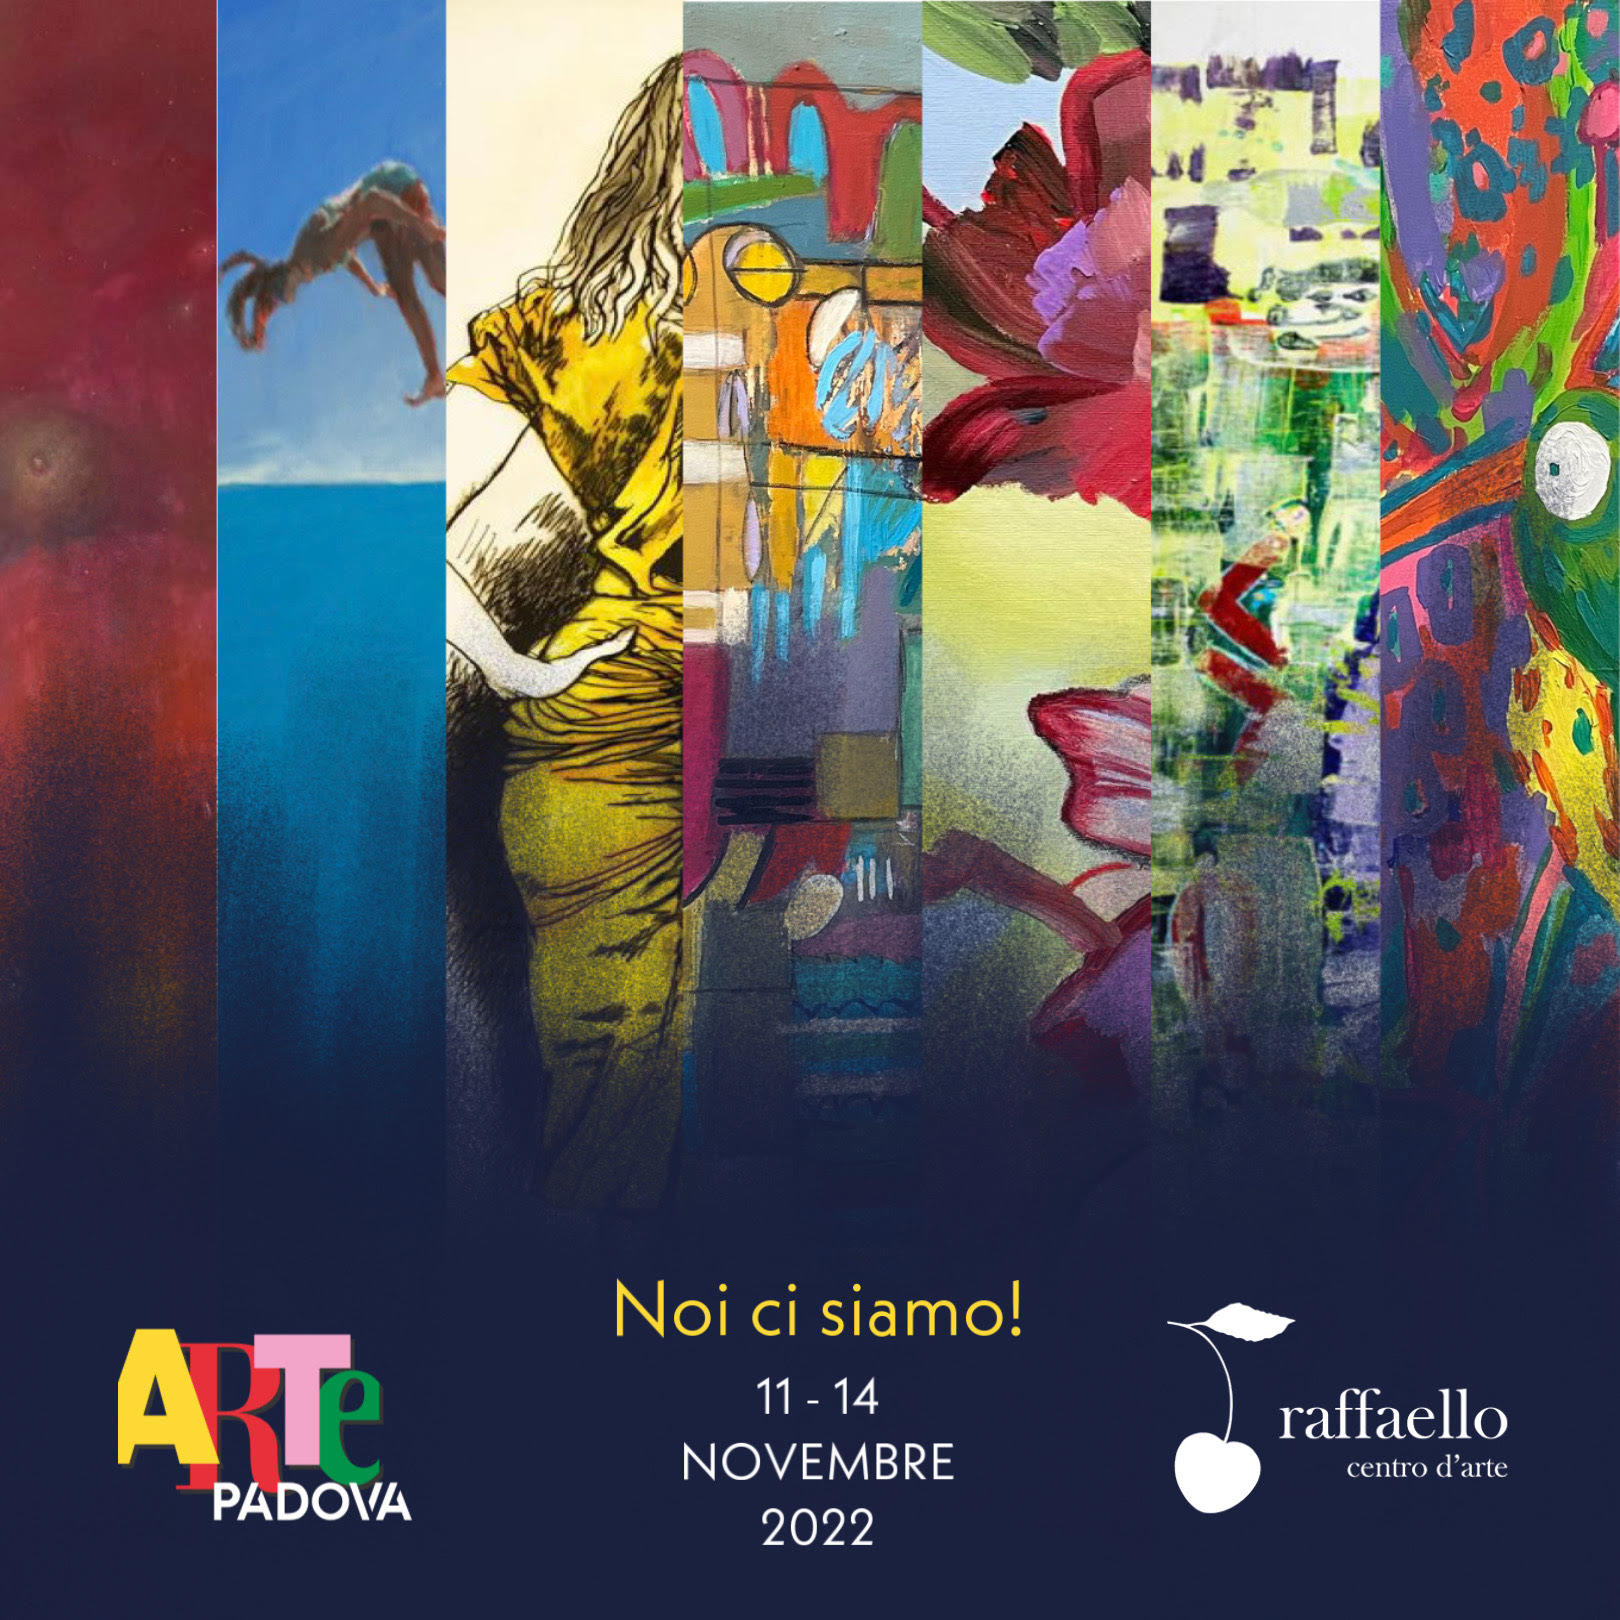 Foto 1 - La galleria “Raffaello” approda ad “ArtePadova” tra l’11 e il 14 novembre. Talenti affermati ed emergenti in trasferta nel Veneto nel segno della promozione dell’arte contemporanea